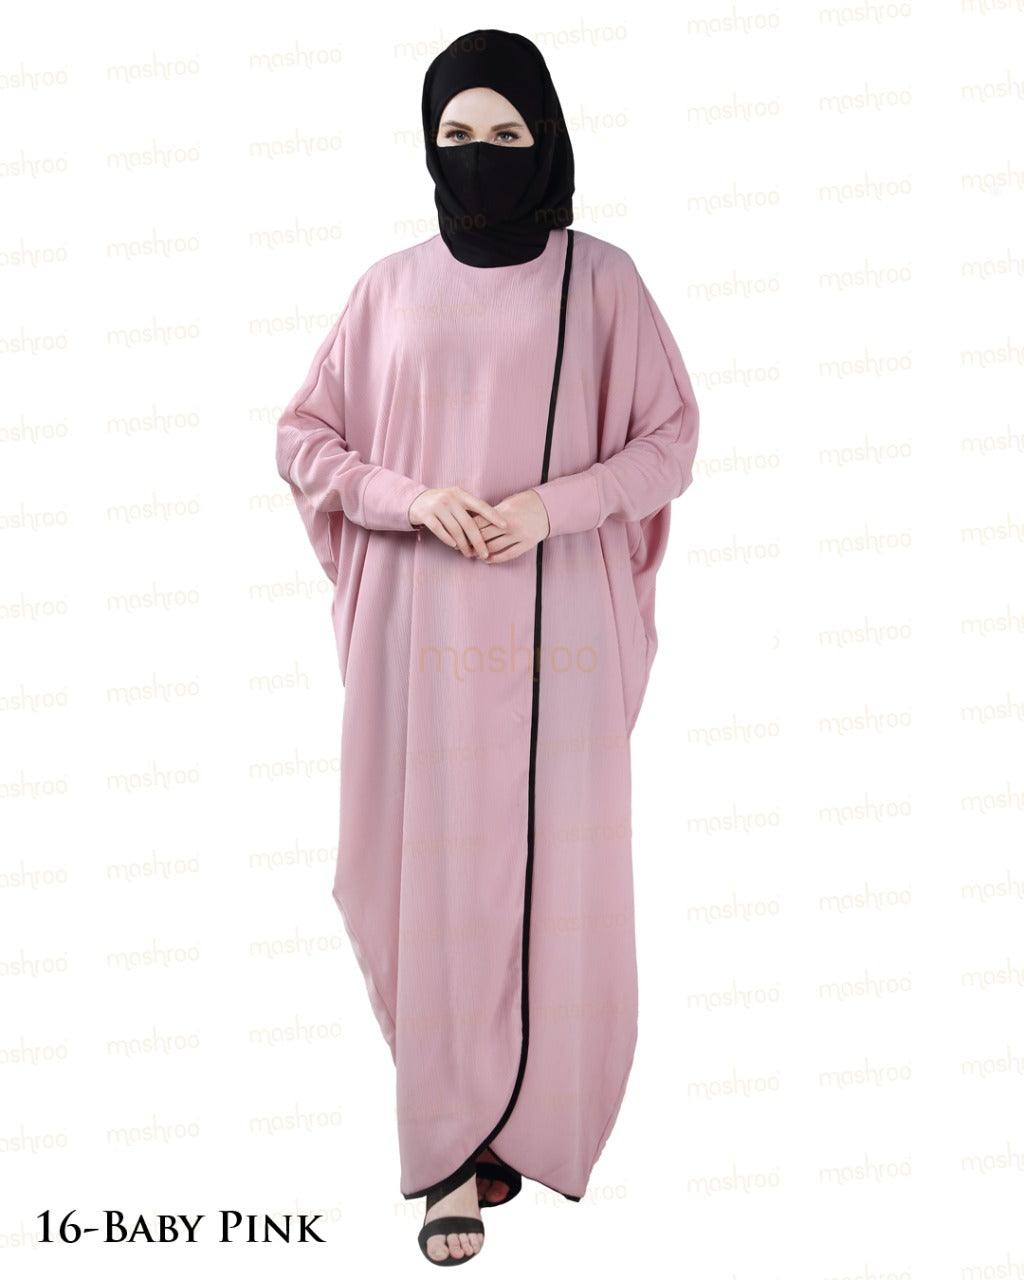 Seamed Jilbab for Women - Mashroo